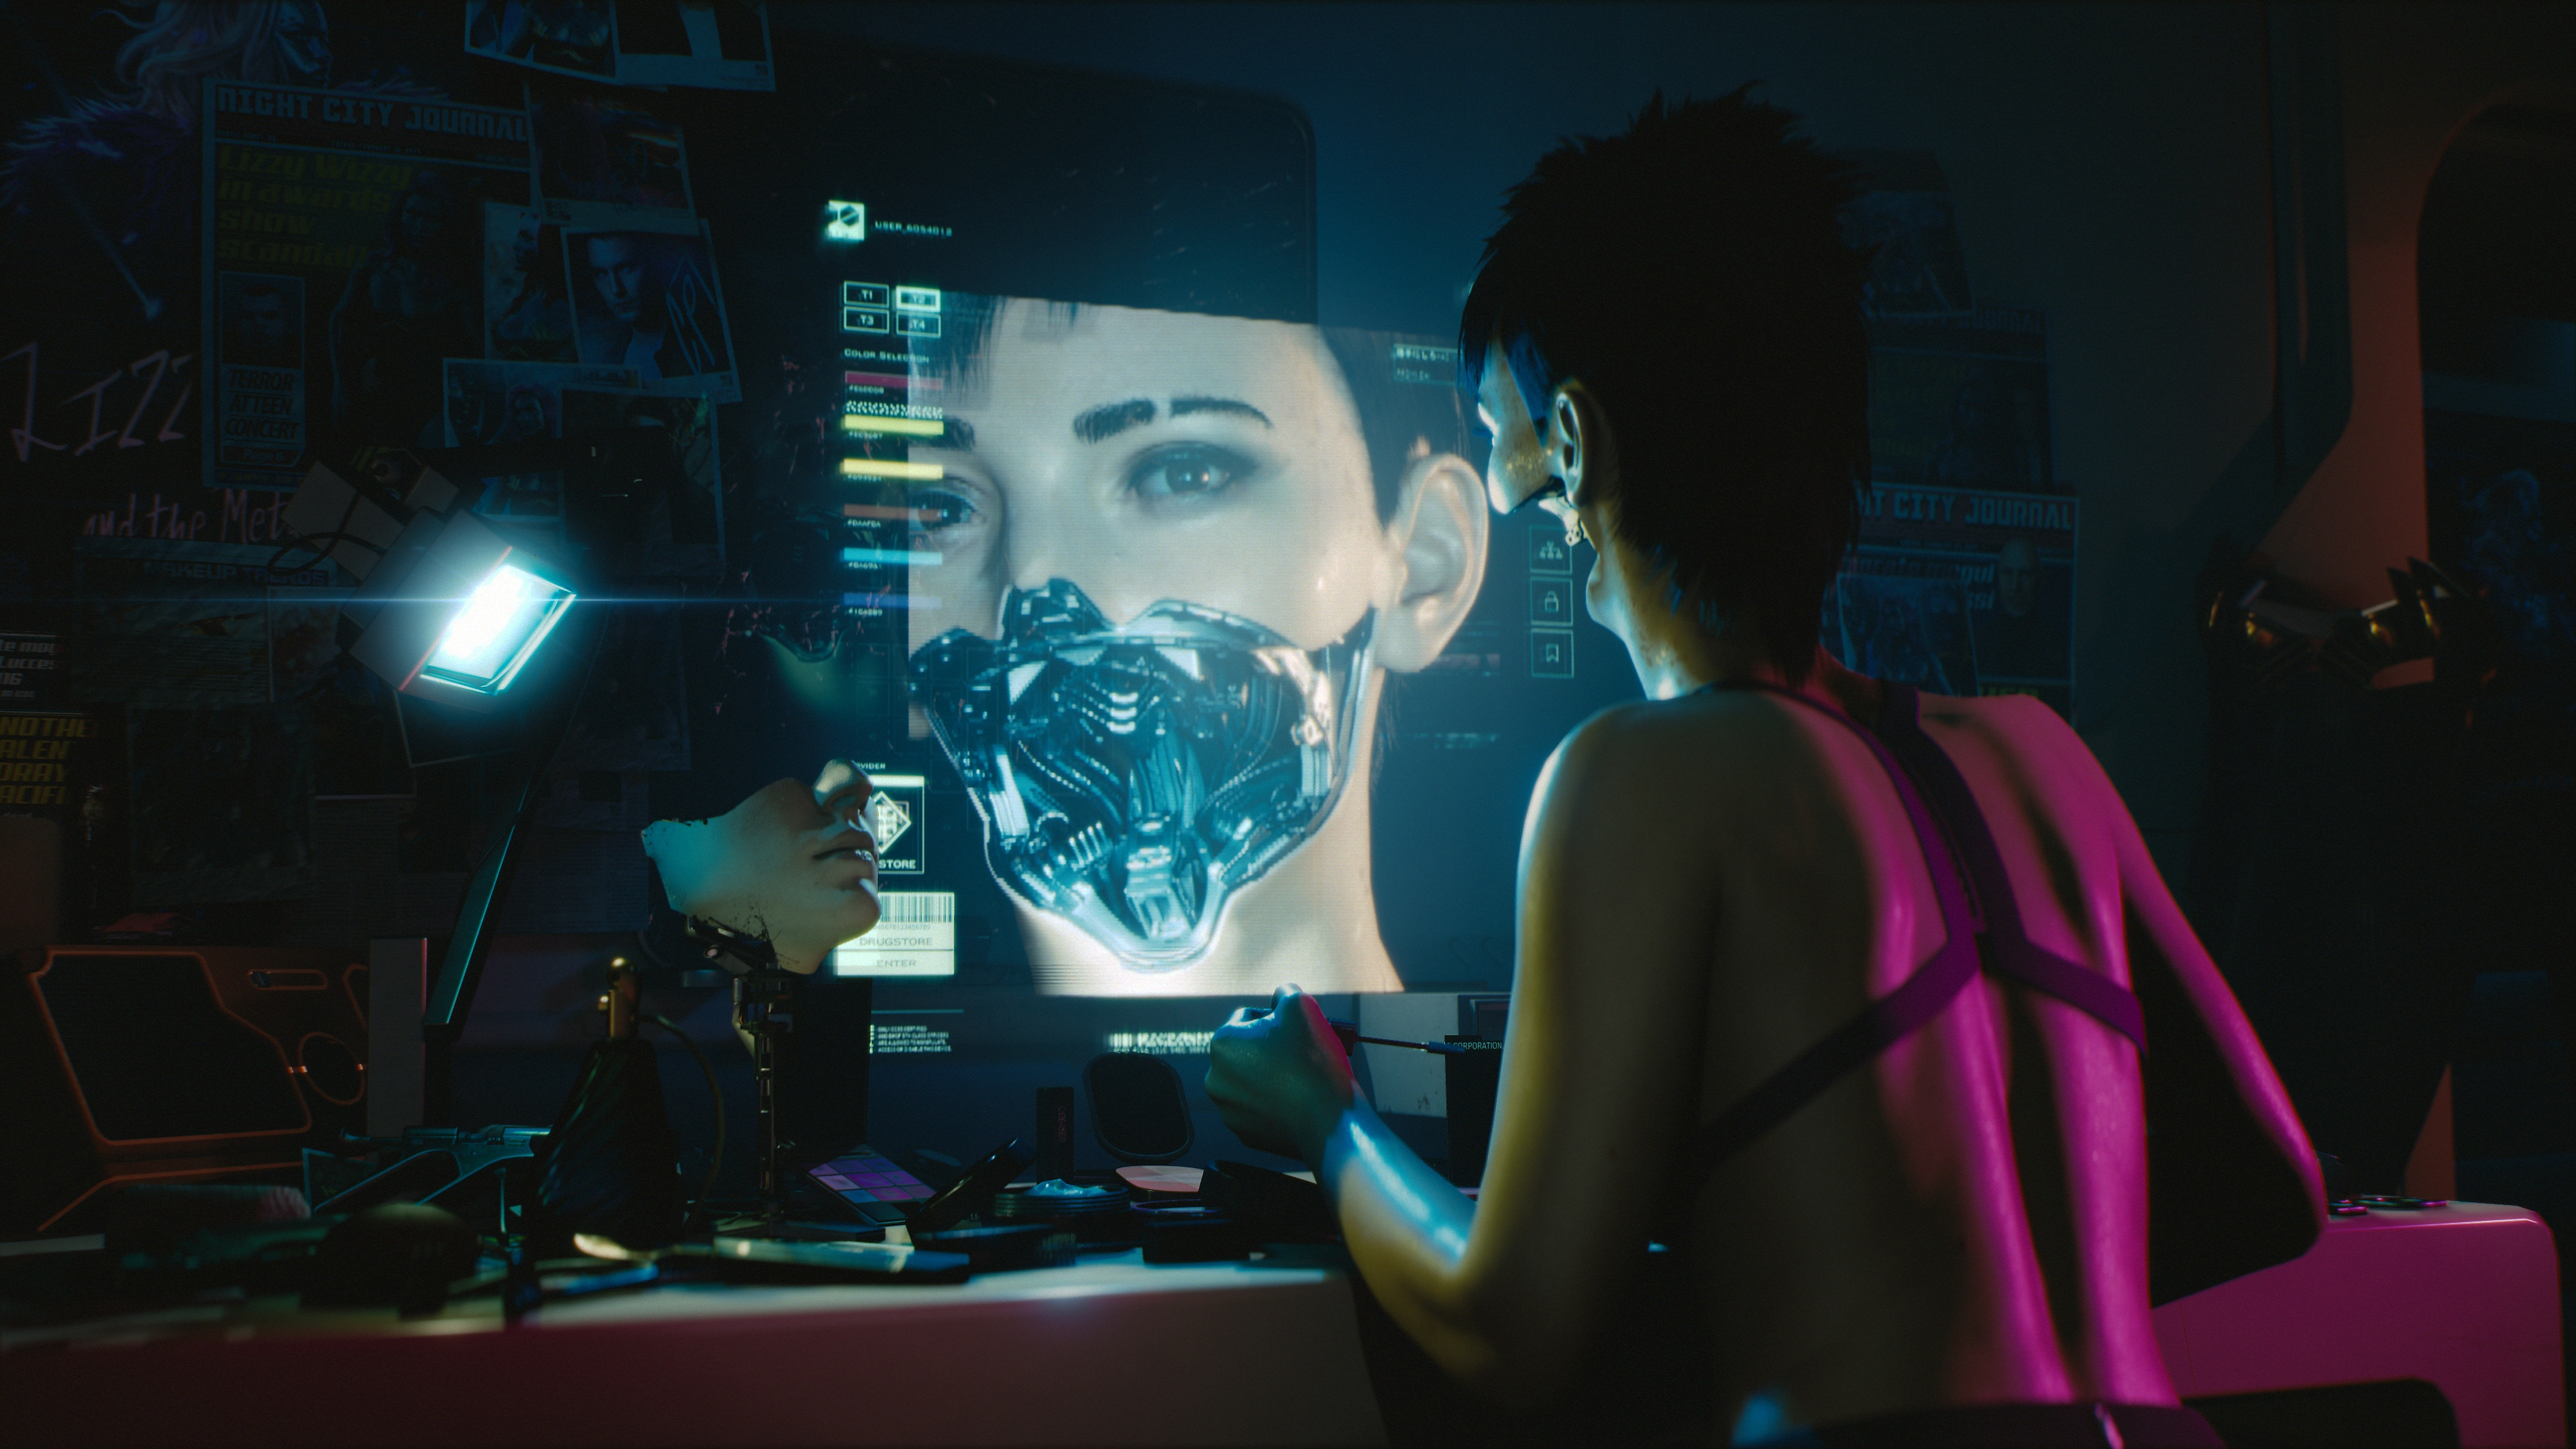 Cyberpunk 2077 – Постройте свой мир киберпанка – ключевые особенности – снимок экрана